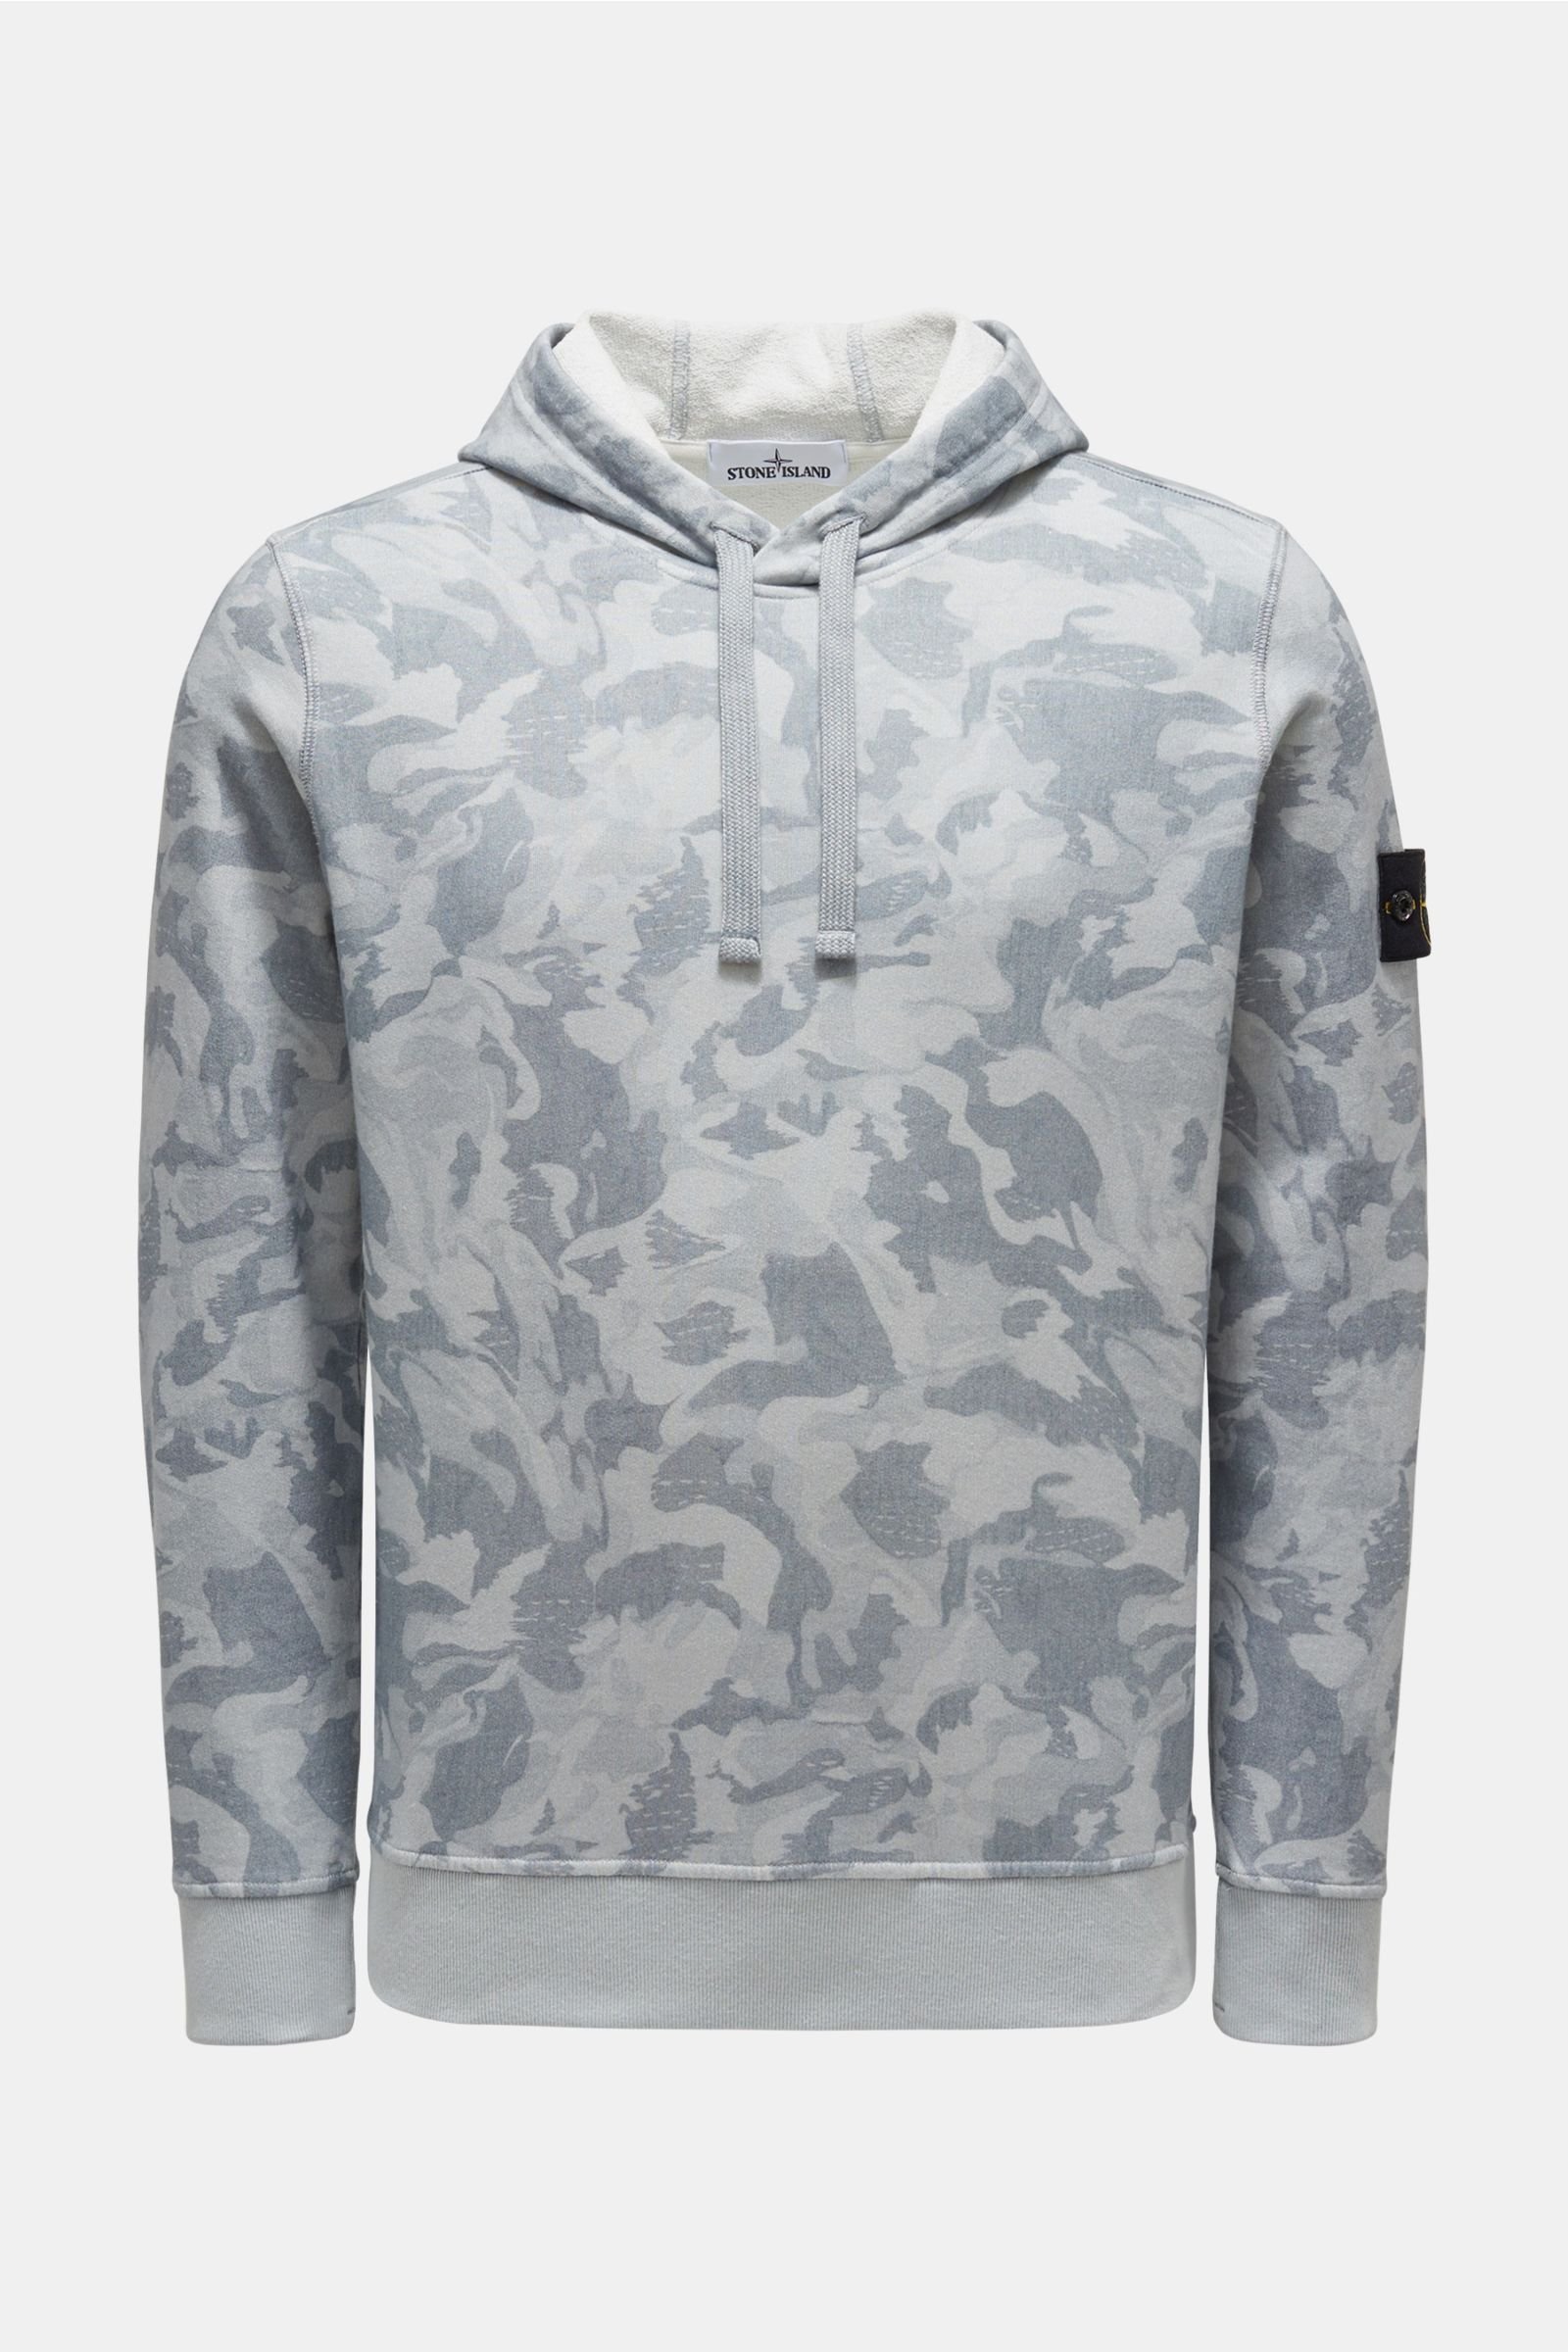 Hooded jumper grey-blue patterned